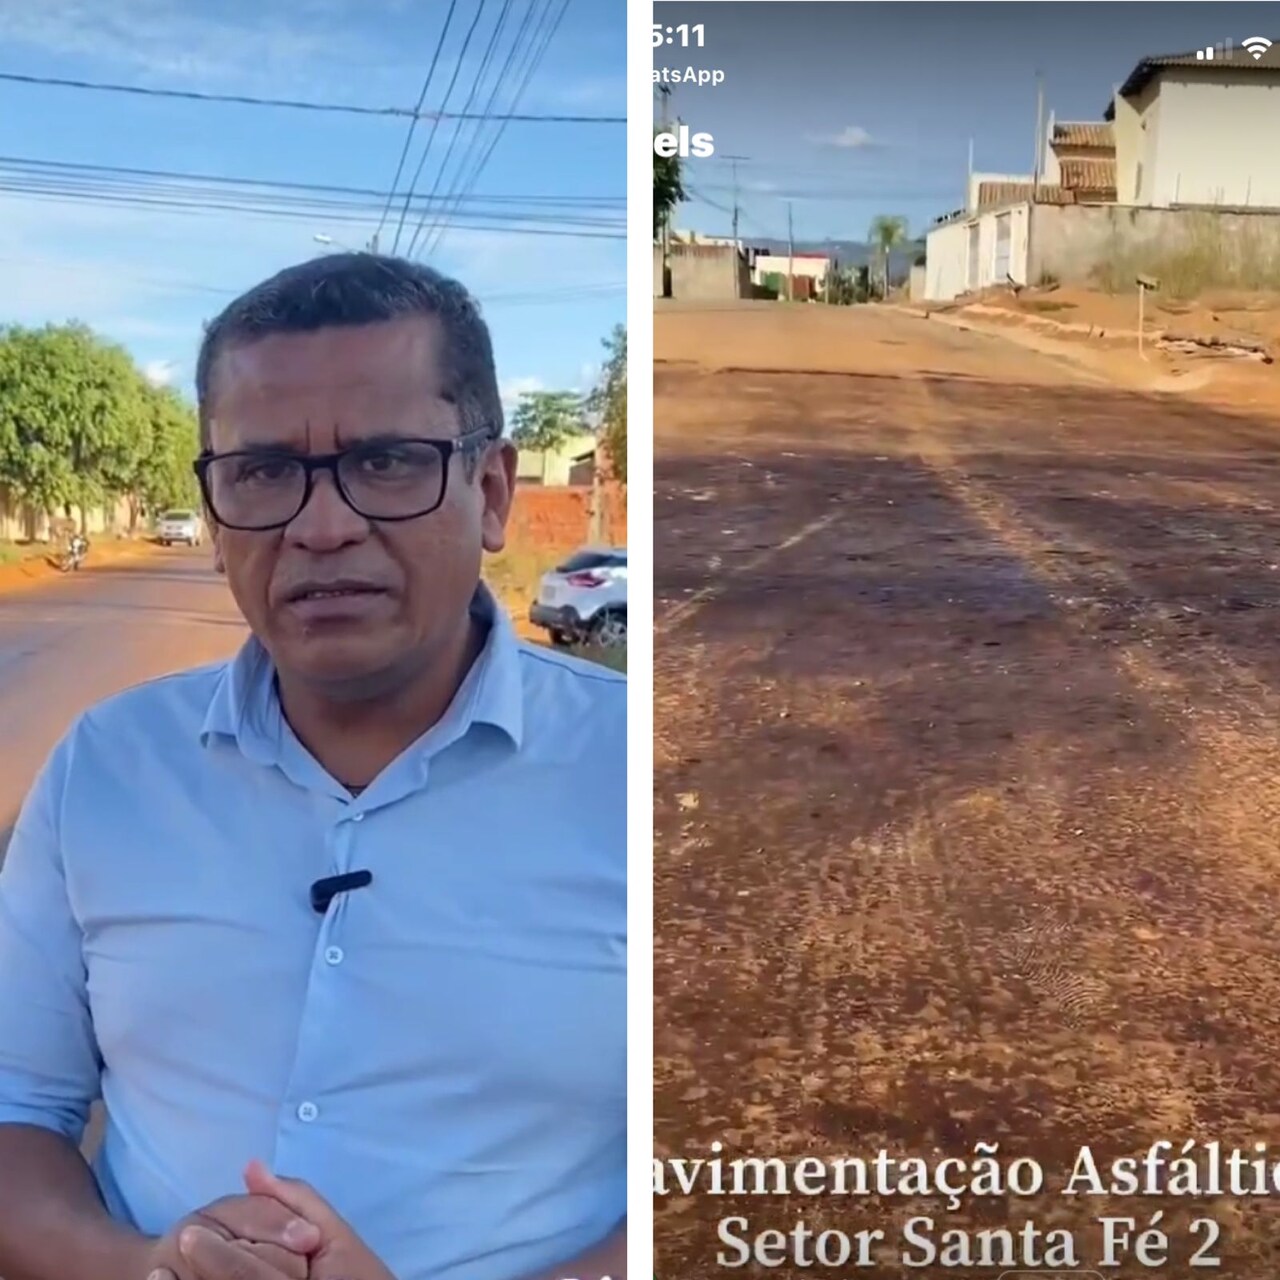 Vereador Sgt. Júnior Brasão tem requerimento atendido e a pavimentação asfáltica do Santa Fé 2, na região Sul de Palmas, está sendo realizada; VEJA